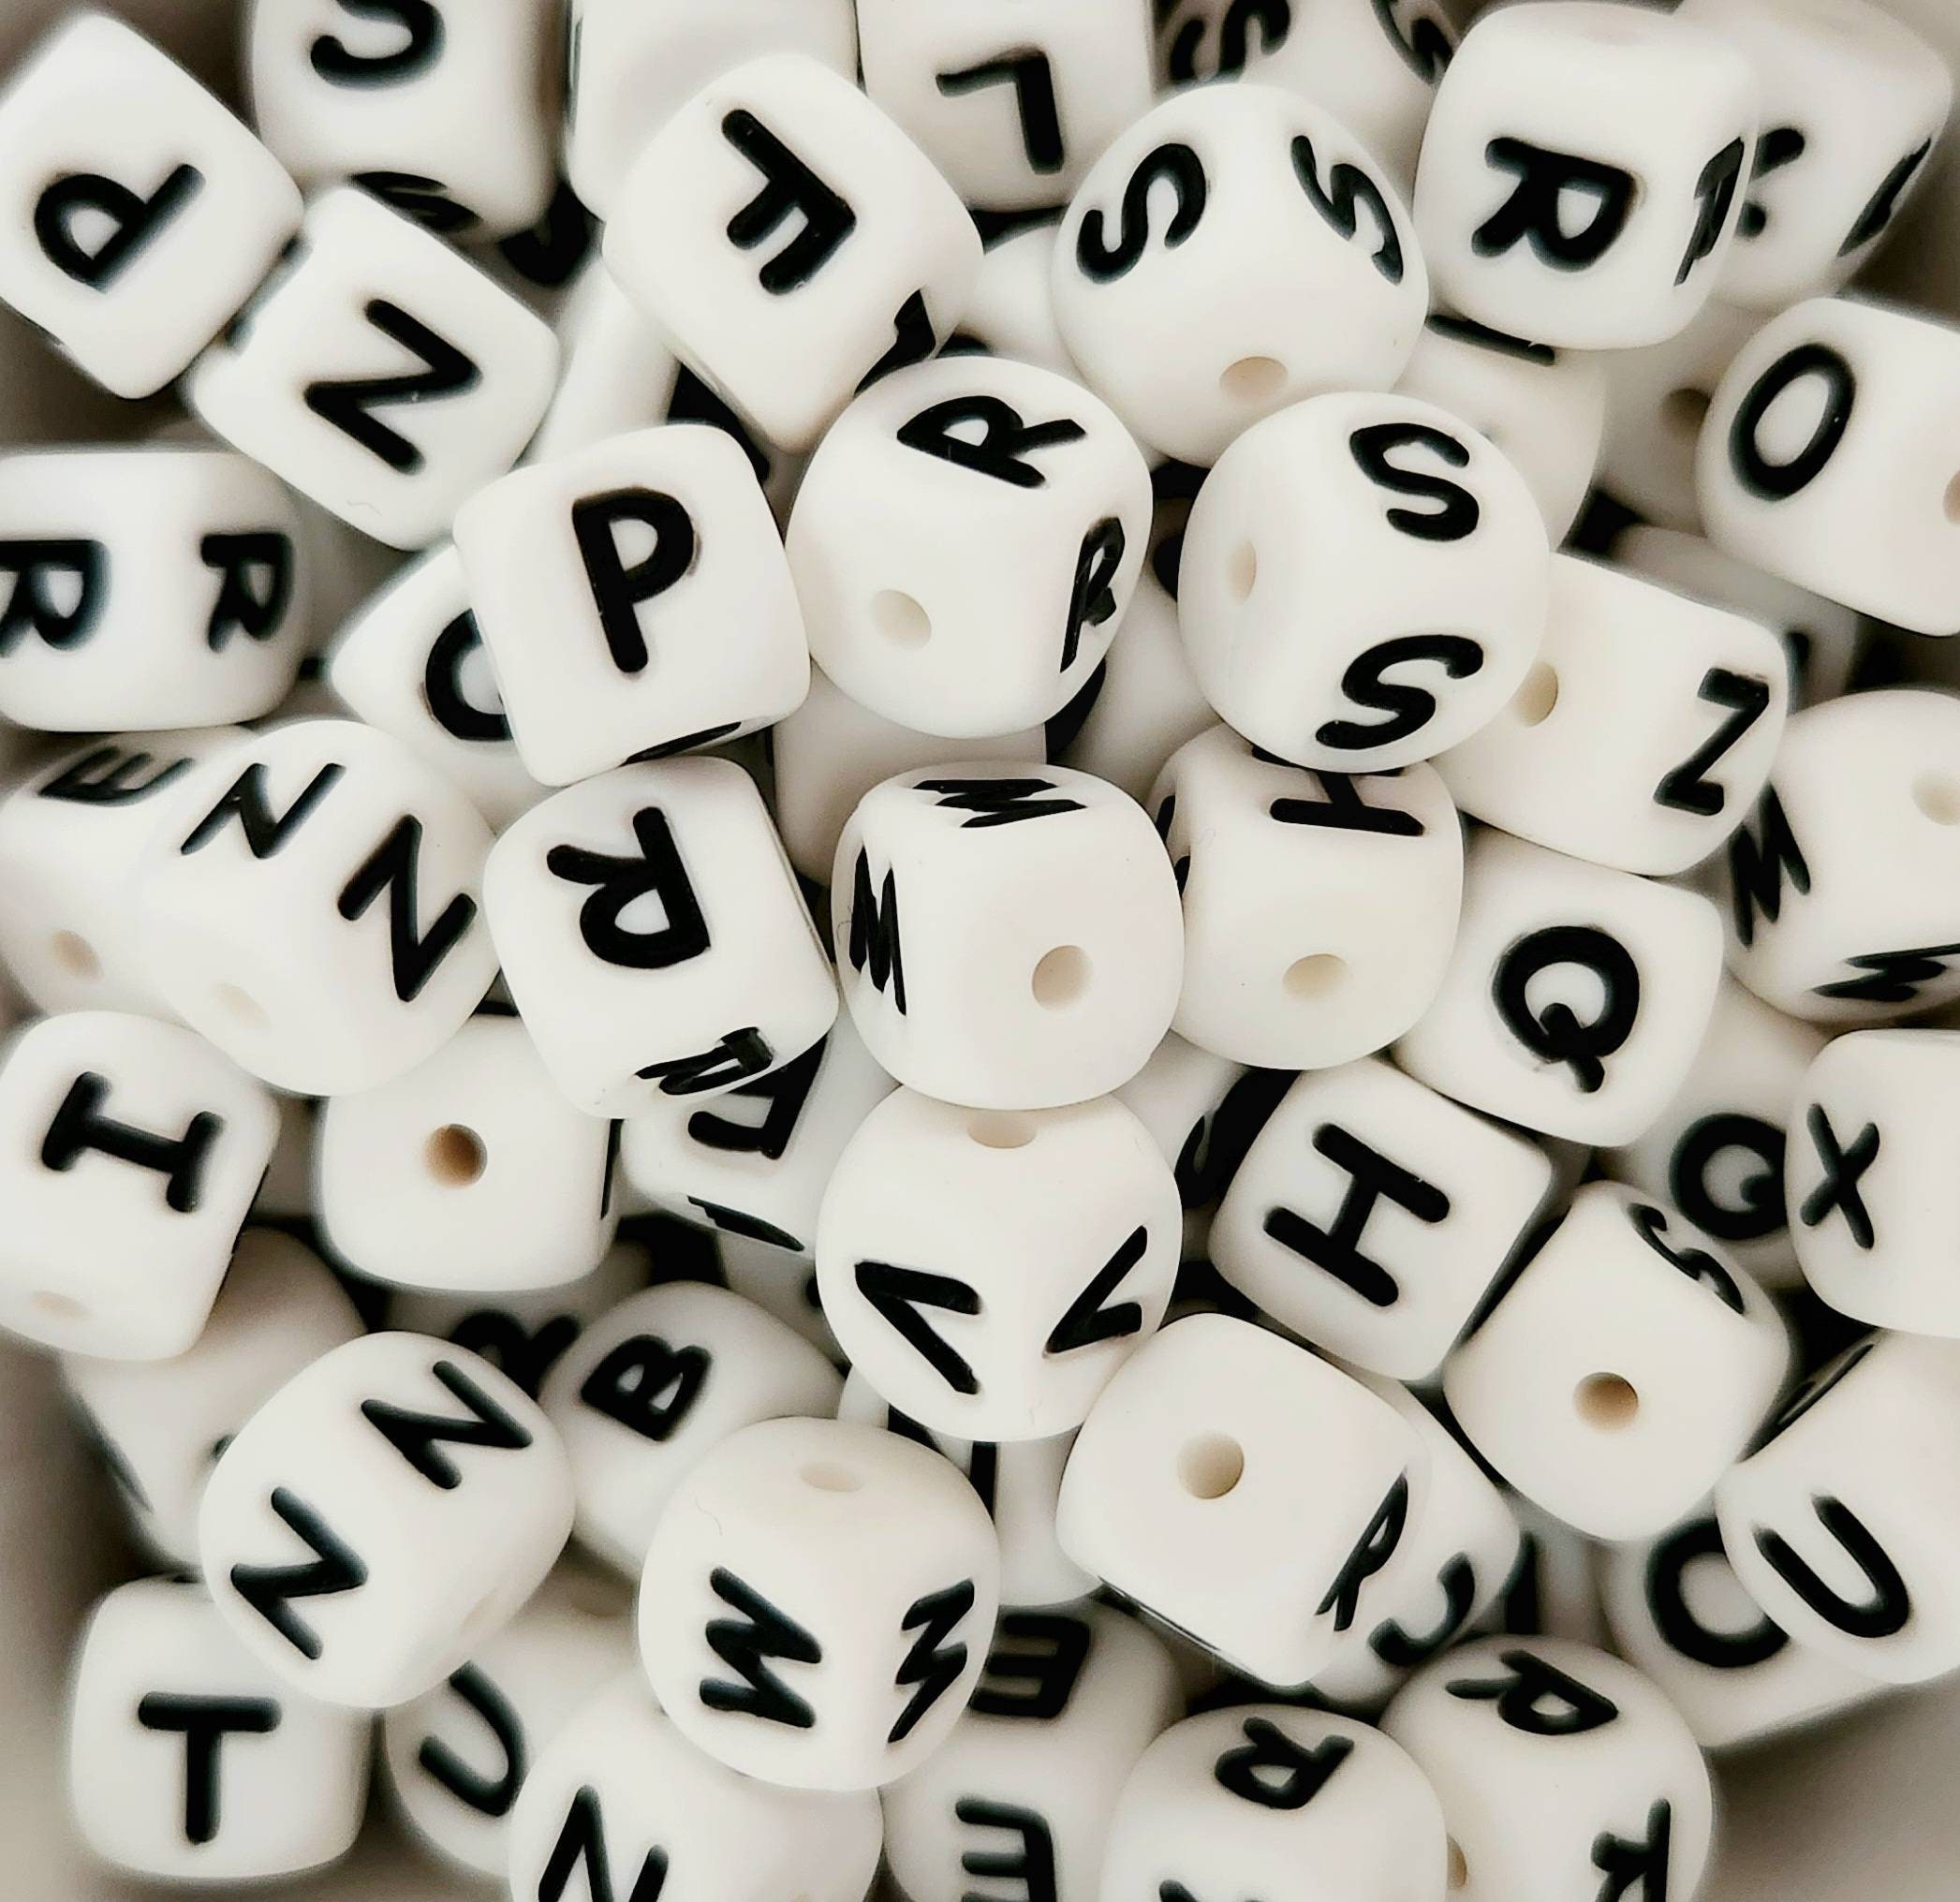 1197SV052WT – 10mm Alphabet Beads – Black / White Letters – 1/4 Lb Value  Pack